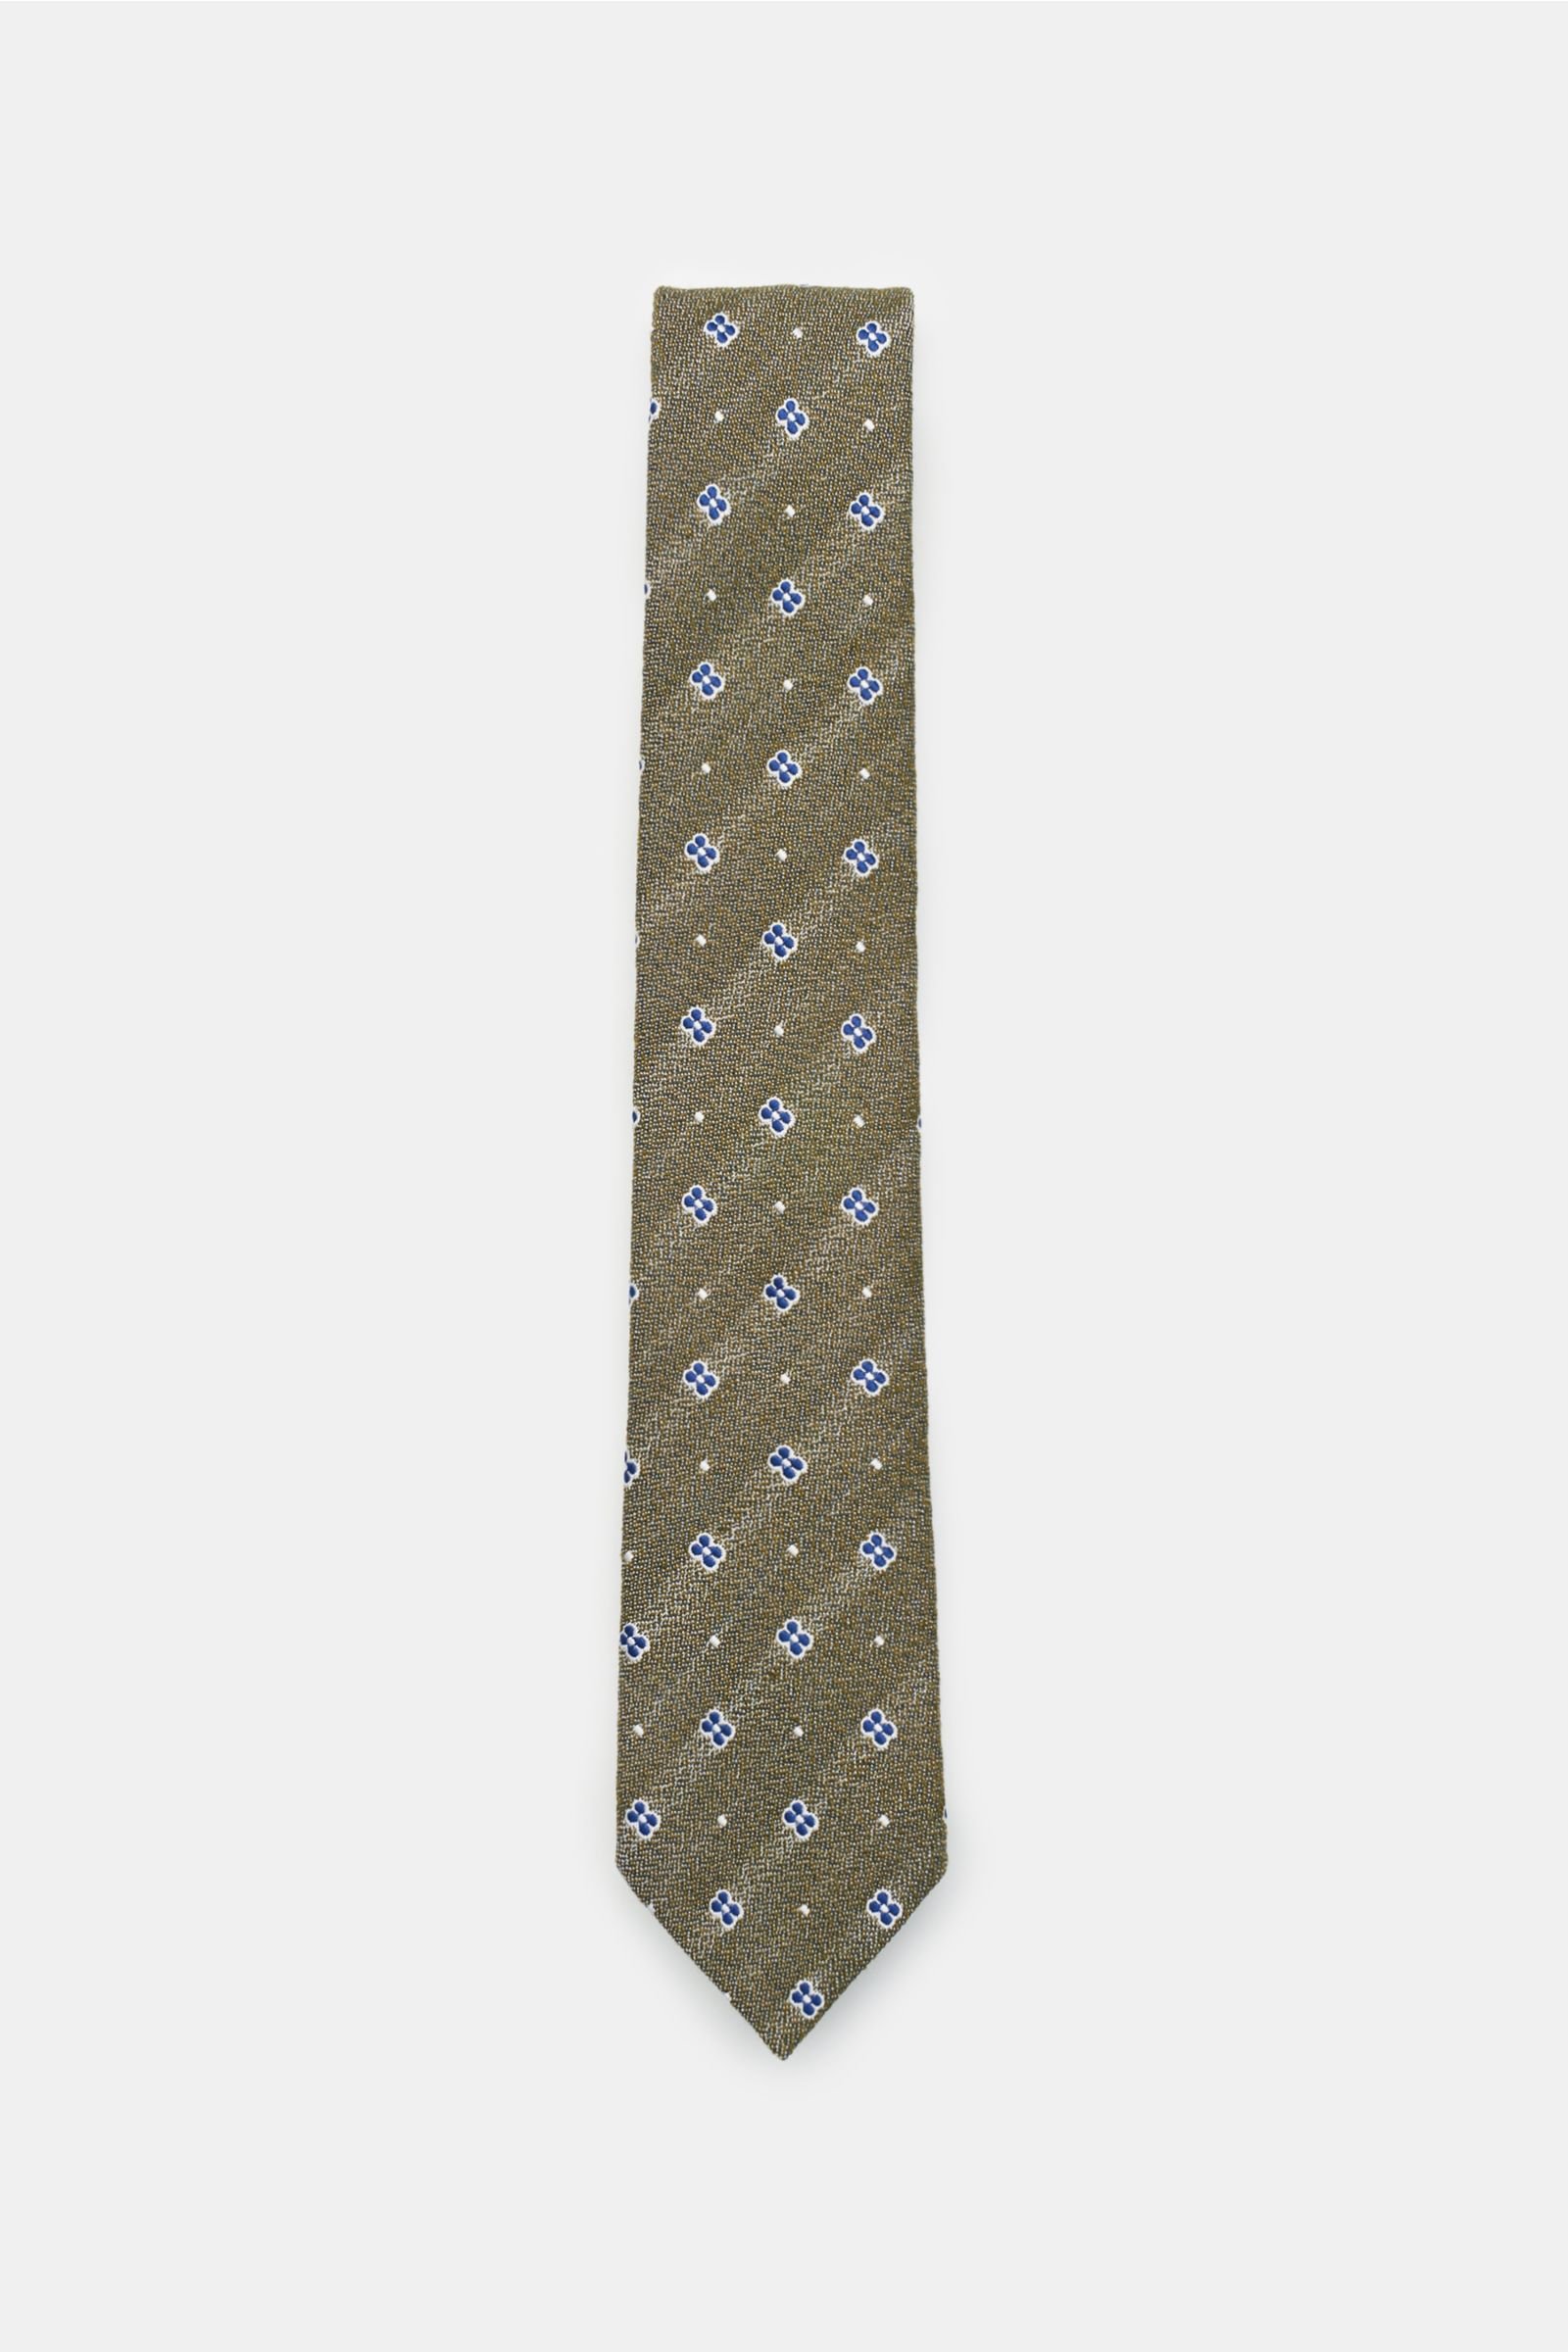 Krawatte oliv/blau gemustert